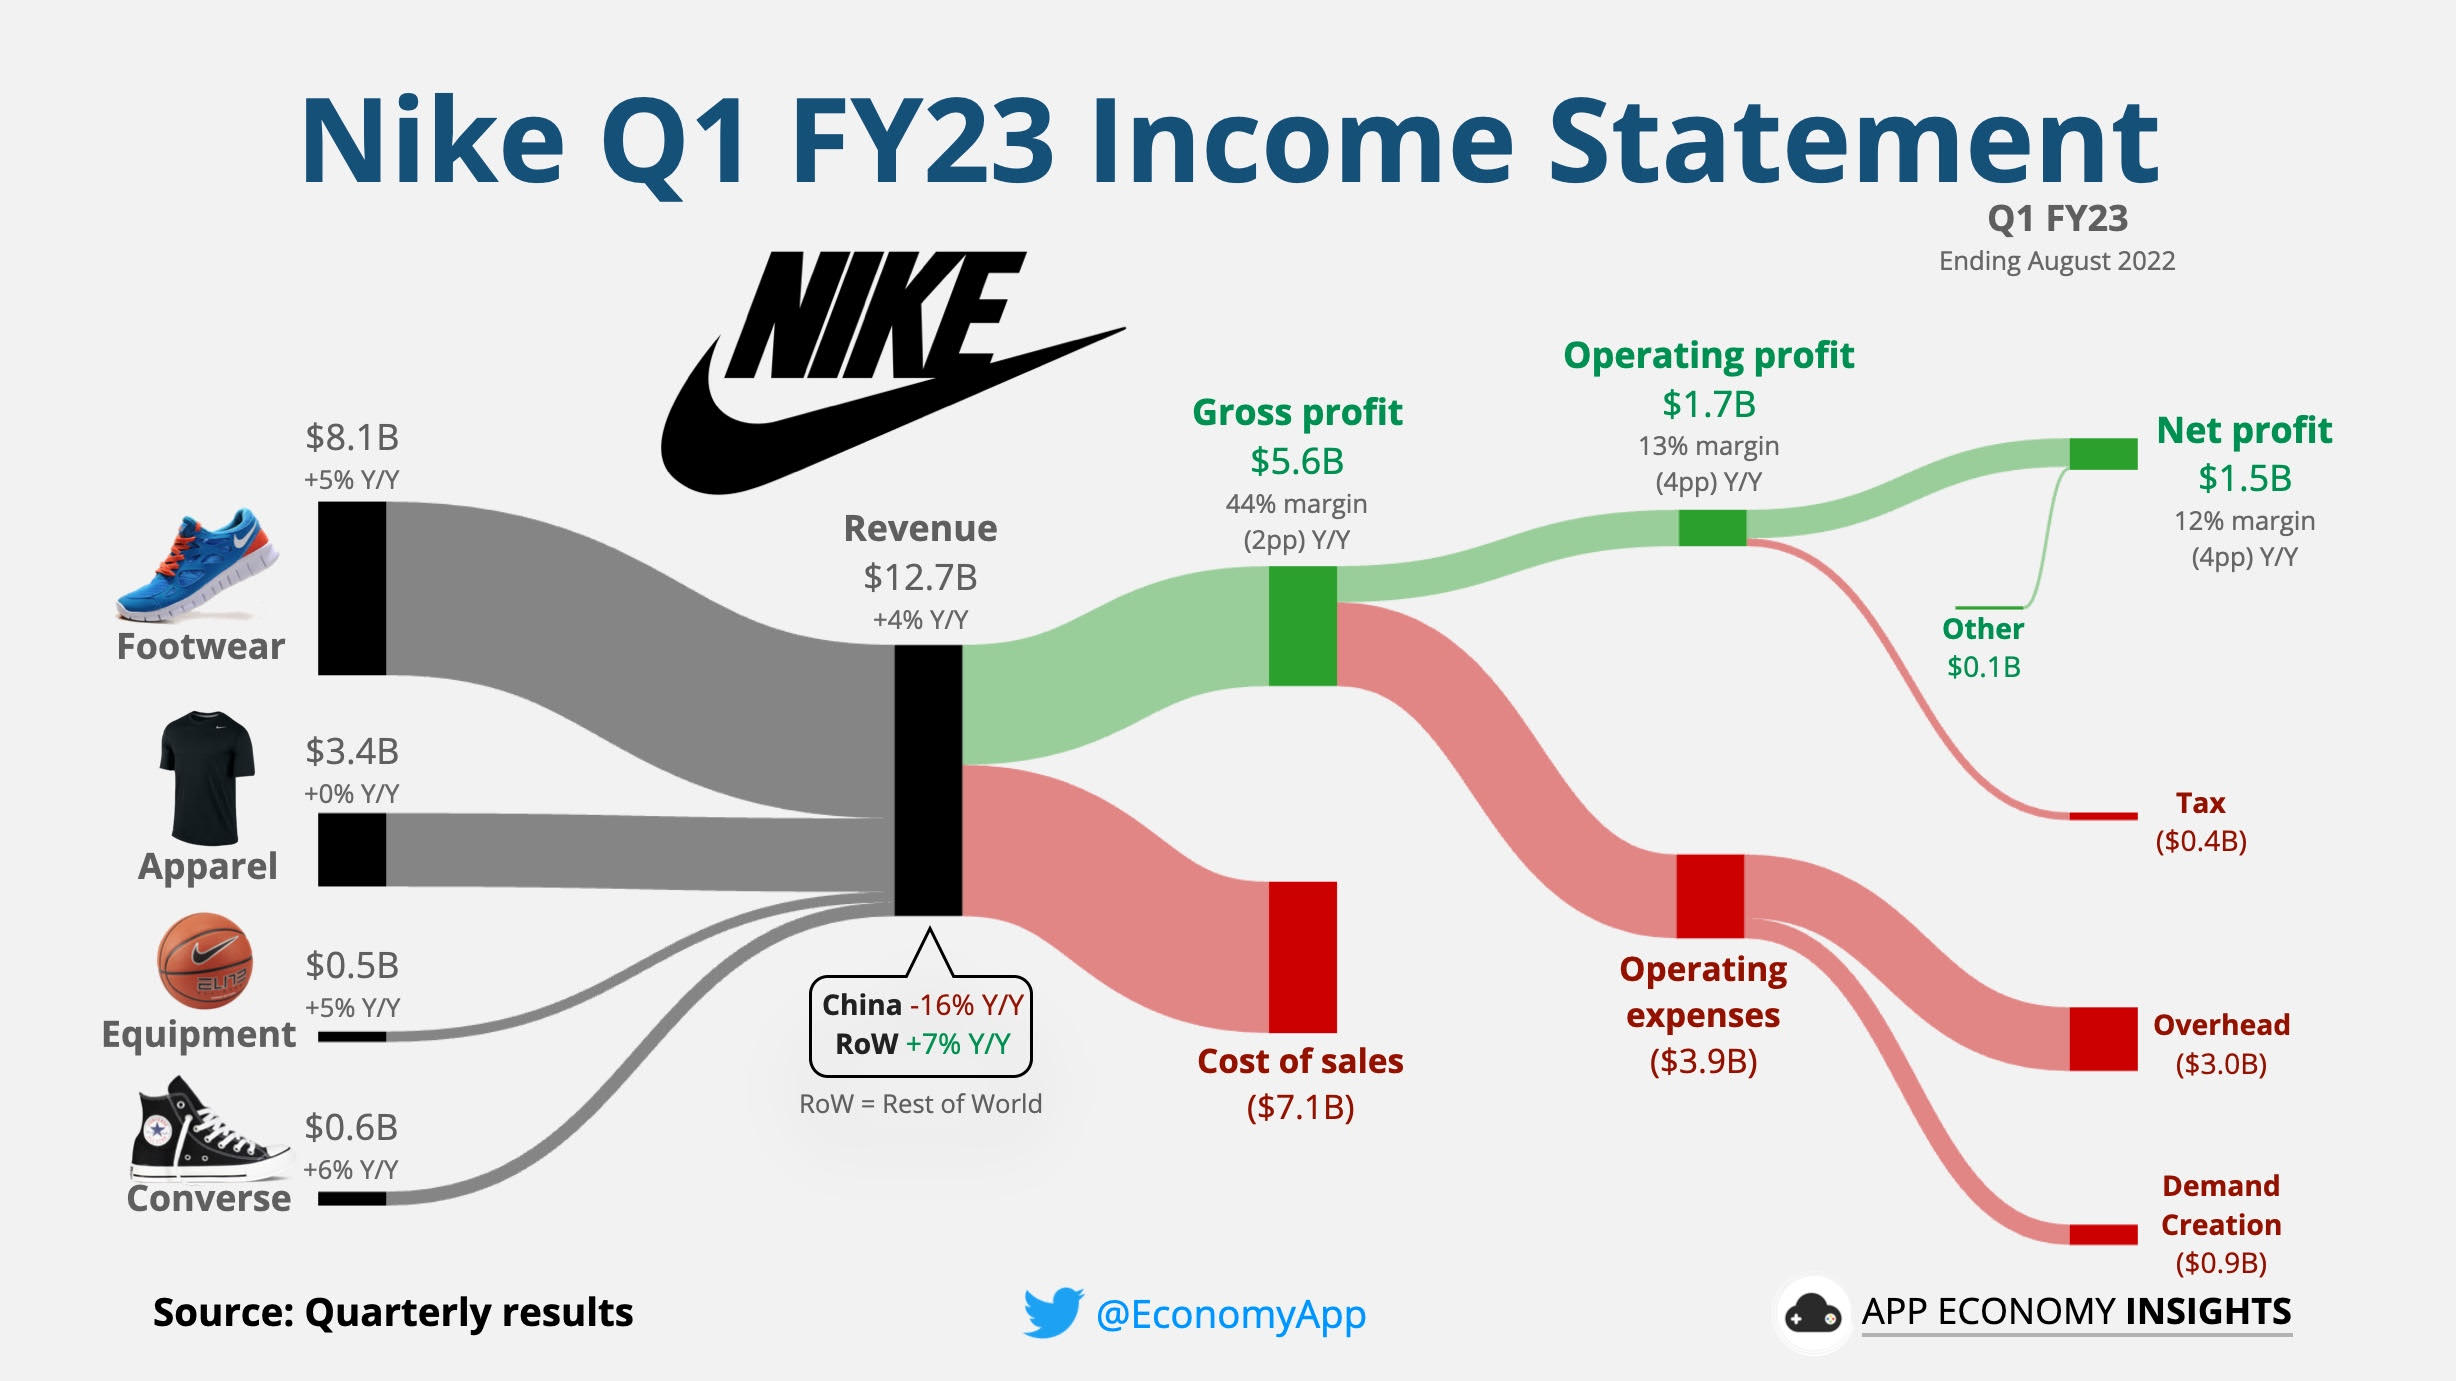 atleet Snel Ale App Economy Insights on Twitter: "$NKE Nike's Income Statement Q1 FY23.  https://t.co/lZcKDDyKAC" / Twitter